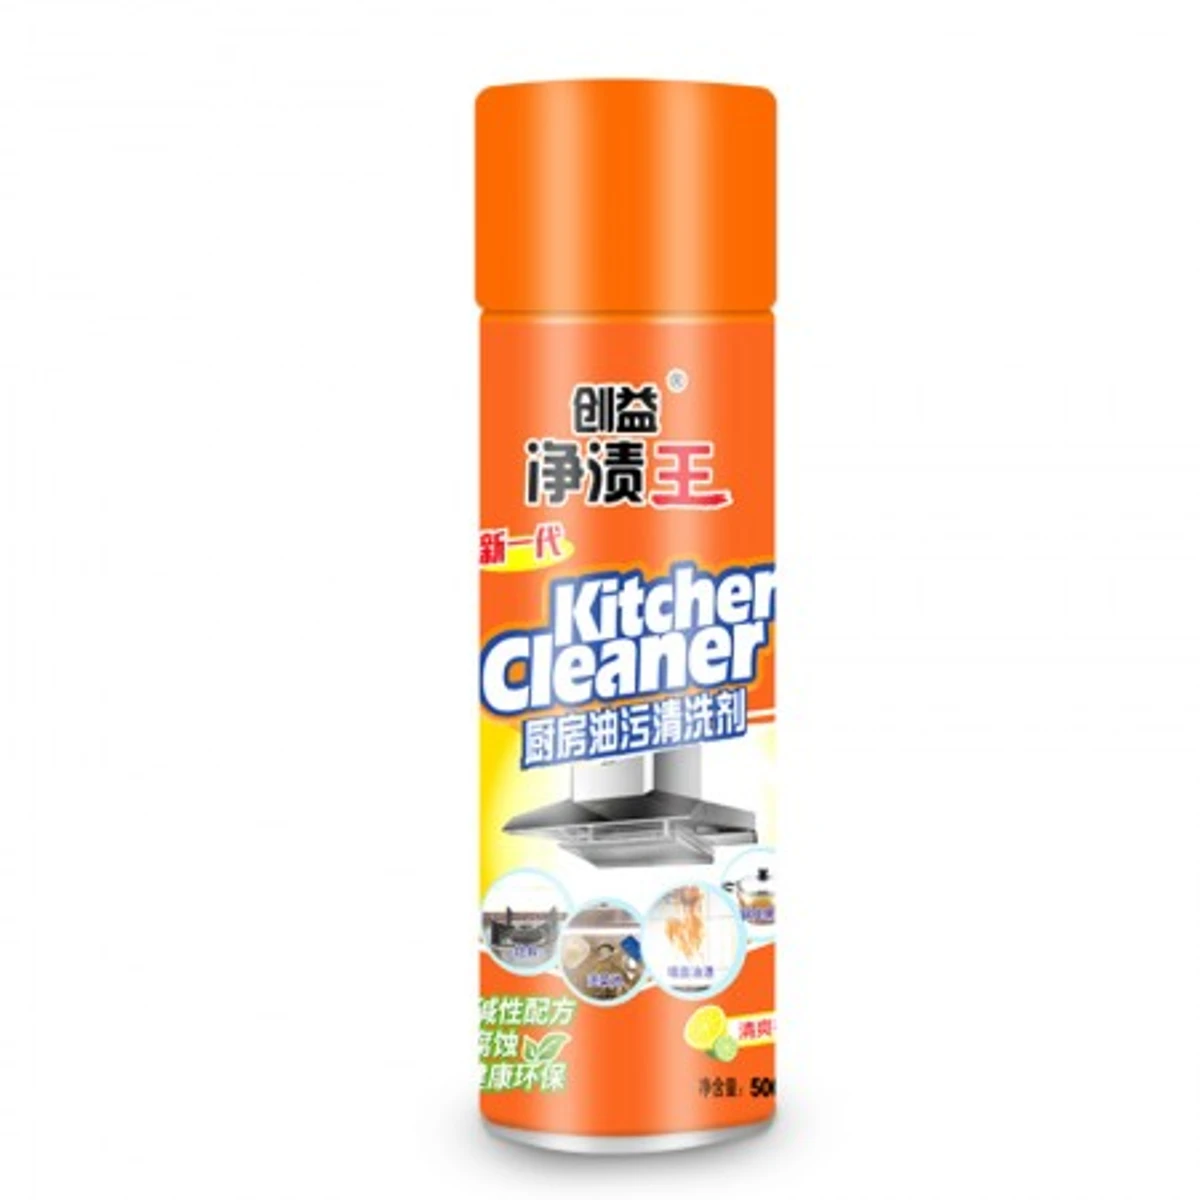 Kitchen Cleaner Foam Spray